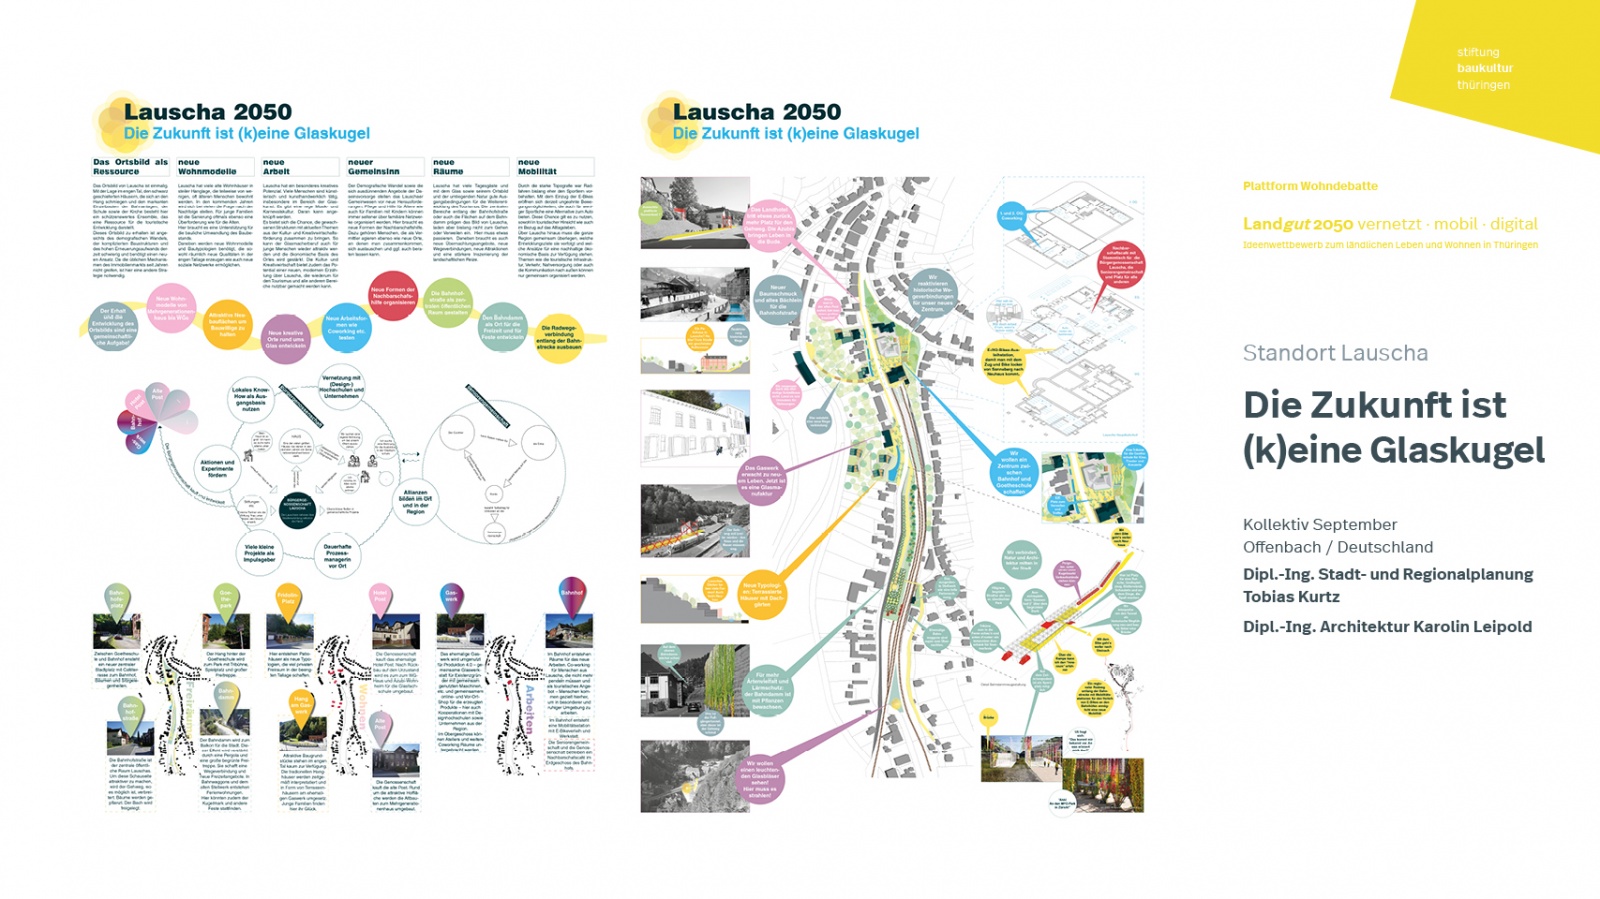 Ideenwettbewerb »Landgut 2050« | Wettbewerbsbeitrag »Die Zukunft ist (k)eine Glaskugel«, Bild: Ideenwettbewerb »Landgut 2050«